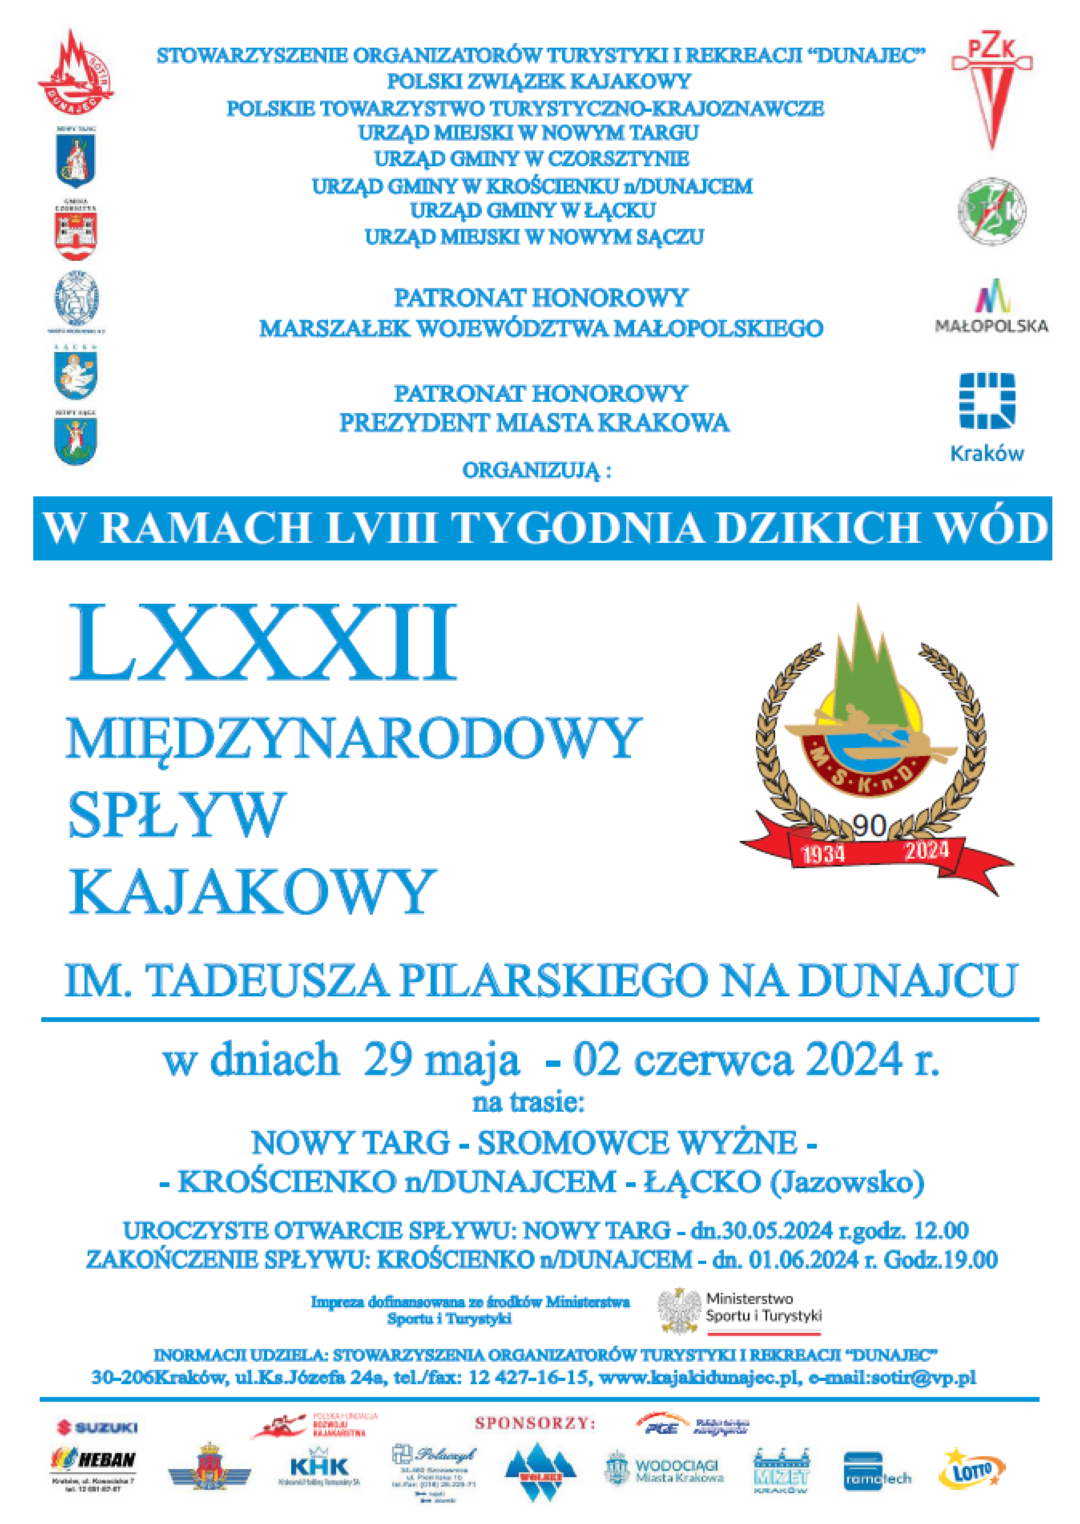 LXXXII Międzynarodowy Spływ Kajakowy już wkrótce